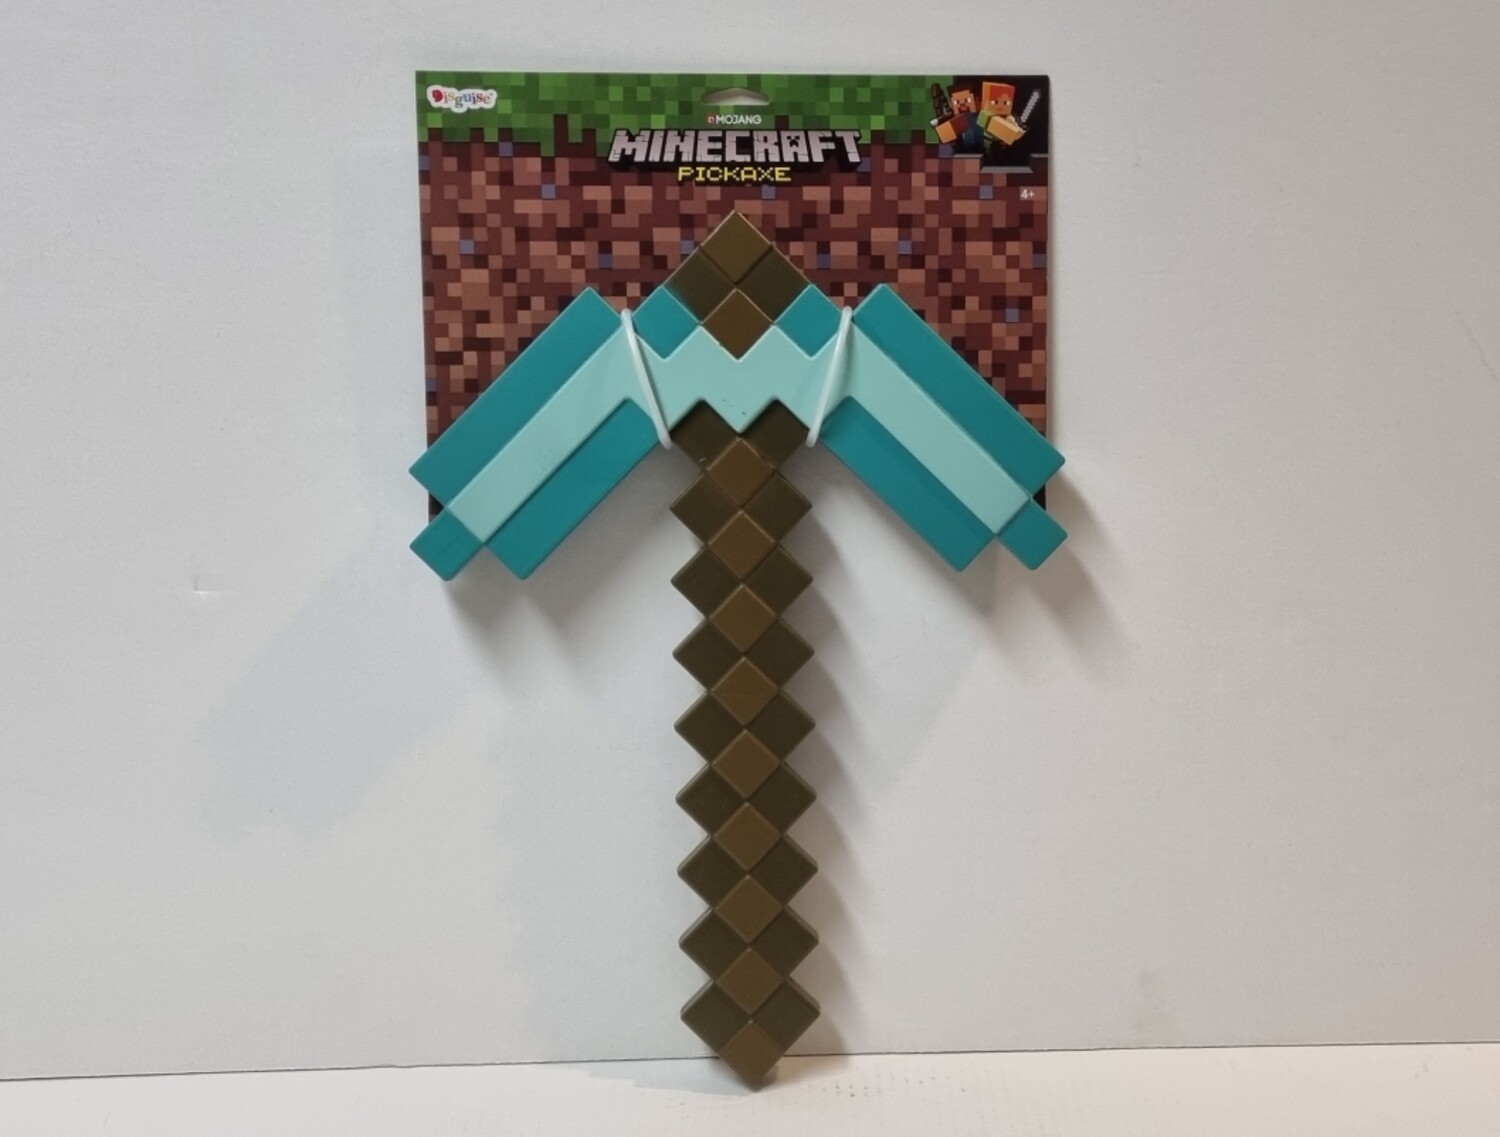 Minecraft Plastic Replica Diamond Pickaxe, 40 cm